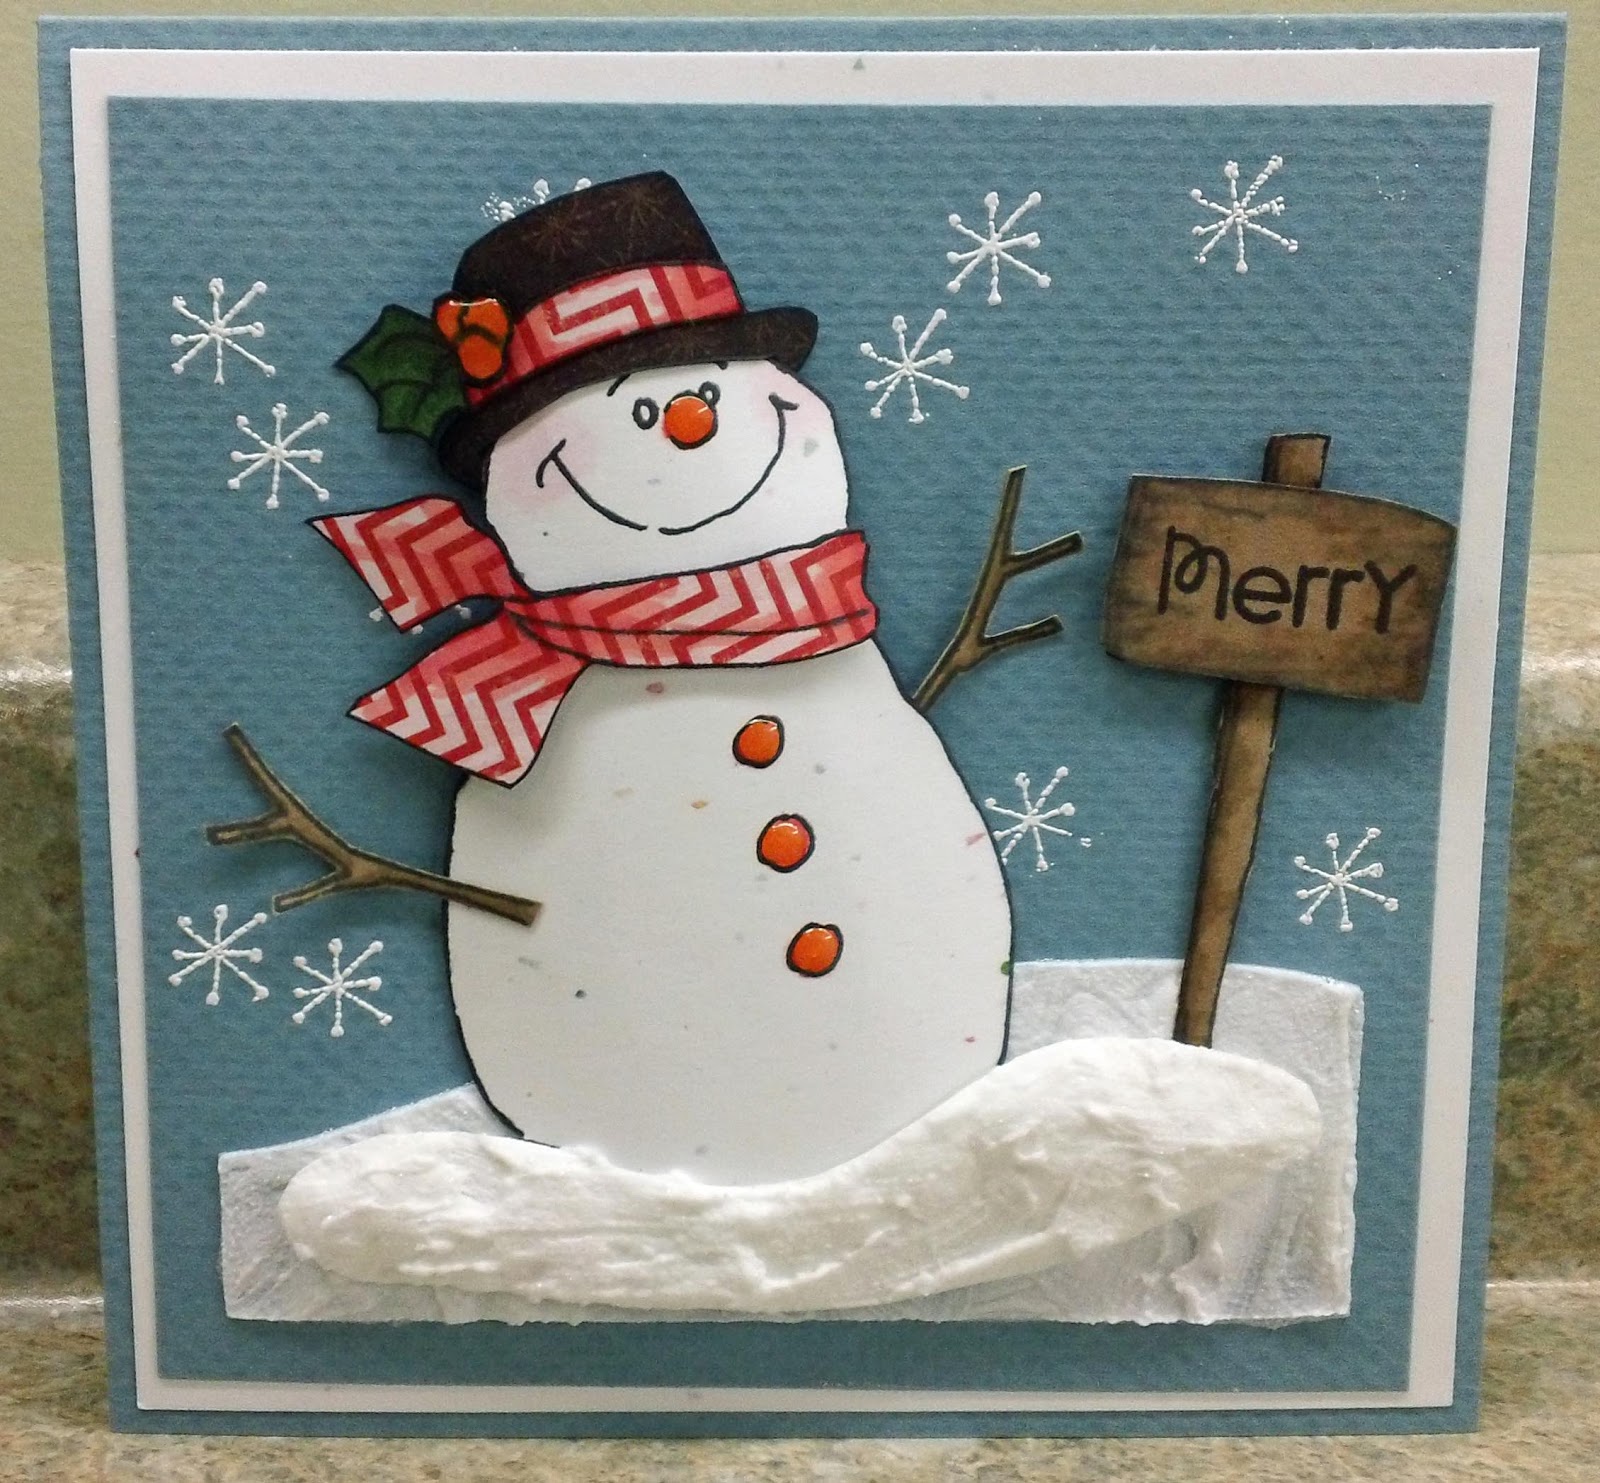 Elliott Creations Another Christmas Card Snowman